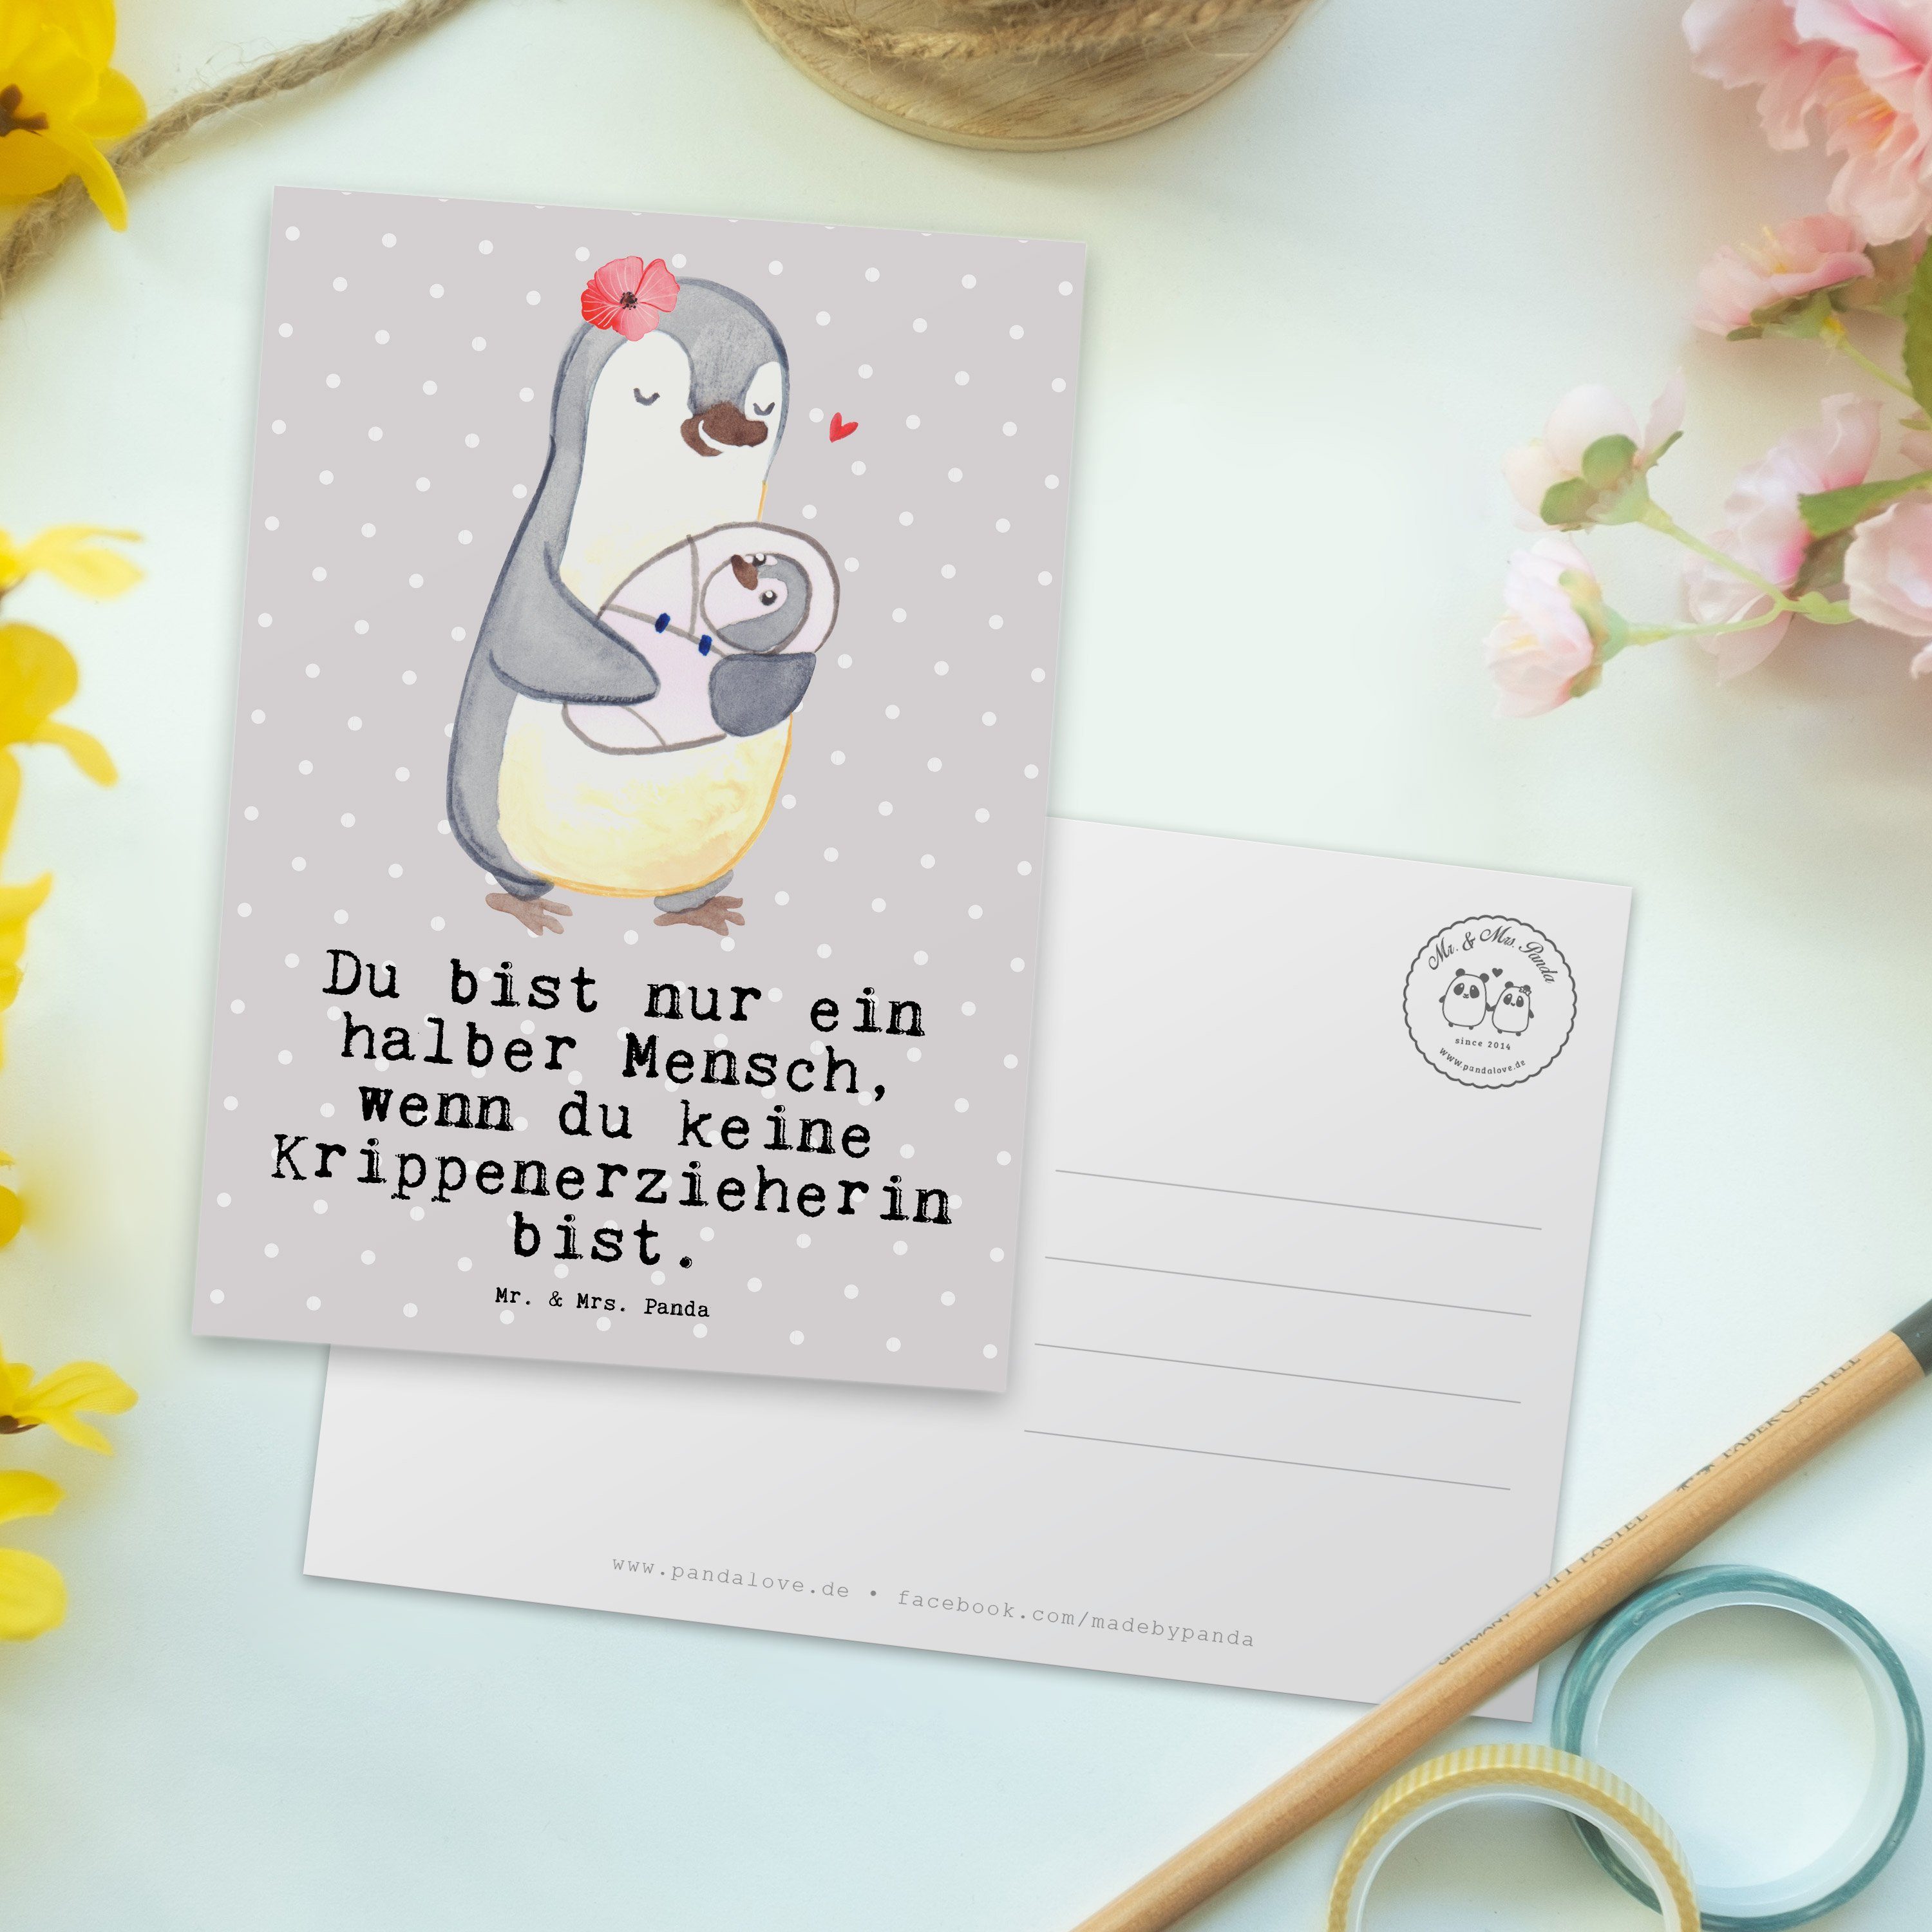 Grau Mrs. Pädagogin, Mr. Postkarte Panda Krippenerzieherin Pastell Einl Herz & Geschenk, - mit -